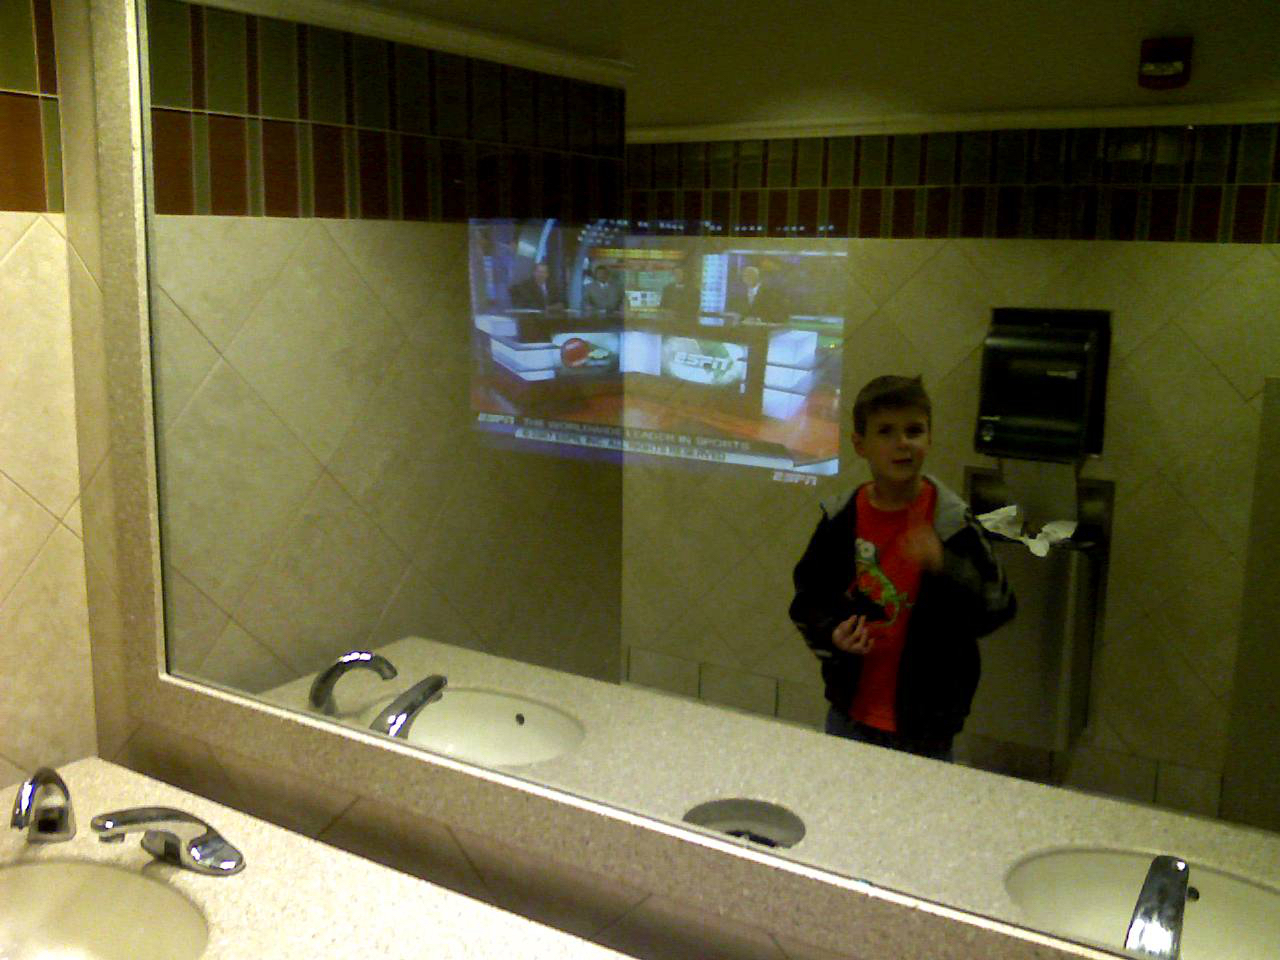 TV in Bathroom Mirror